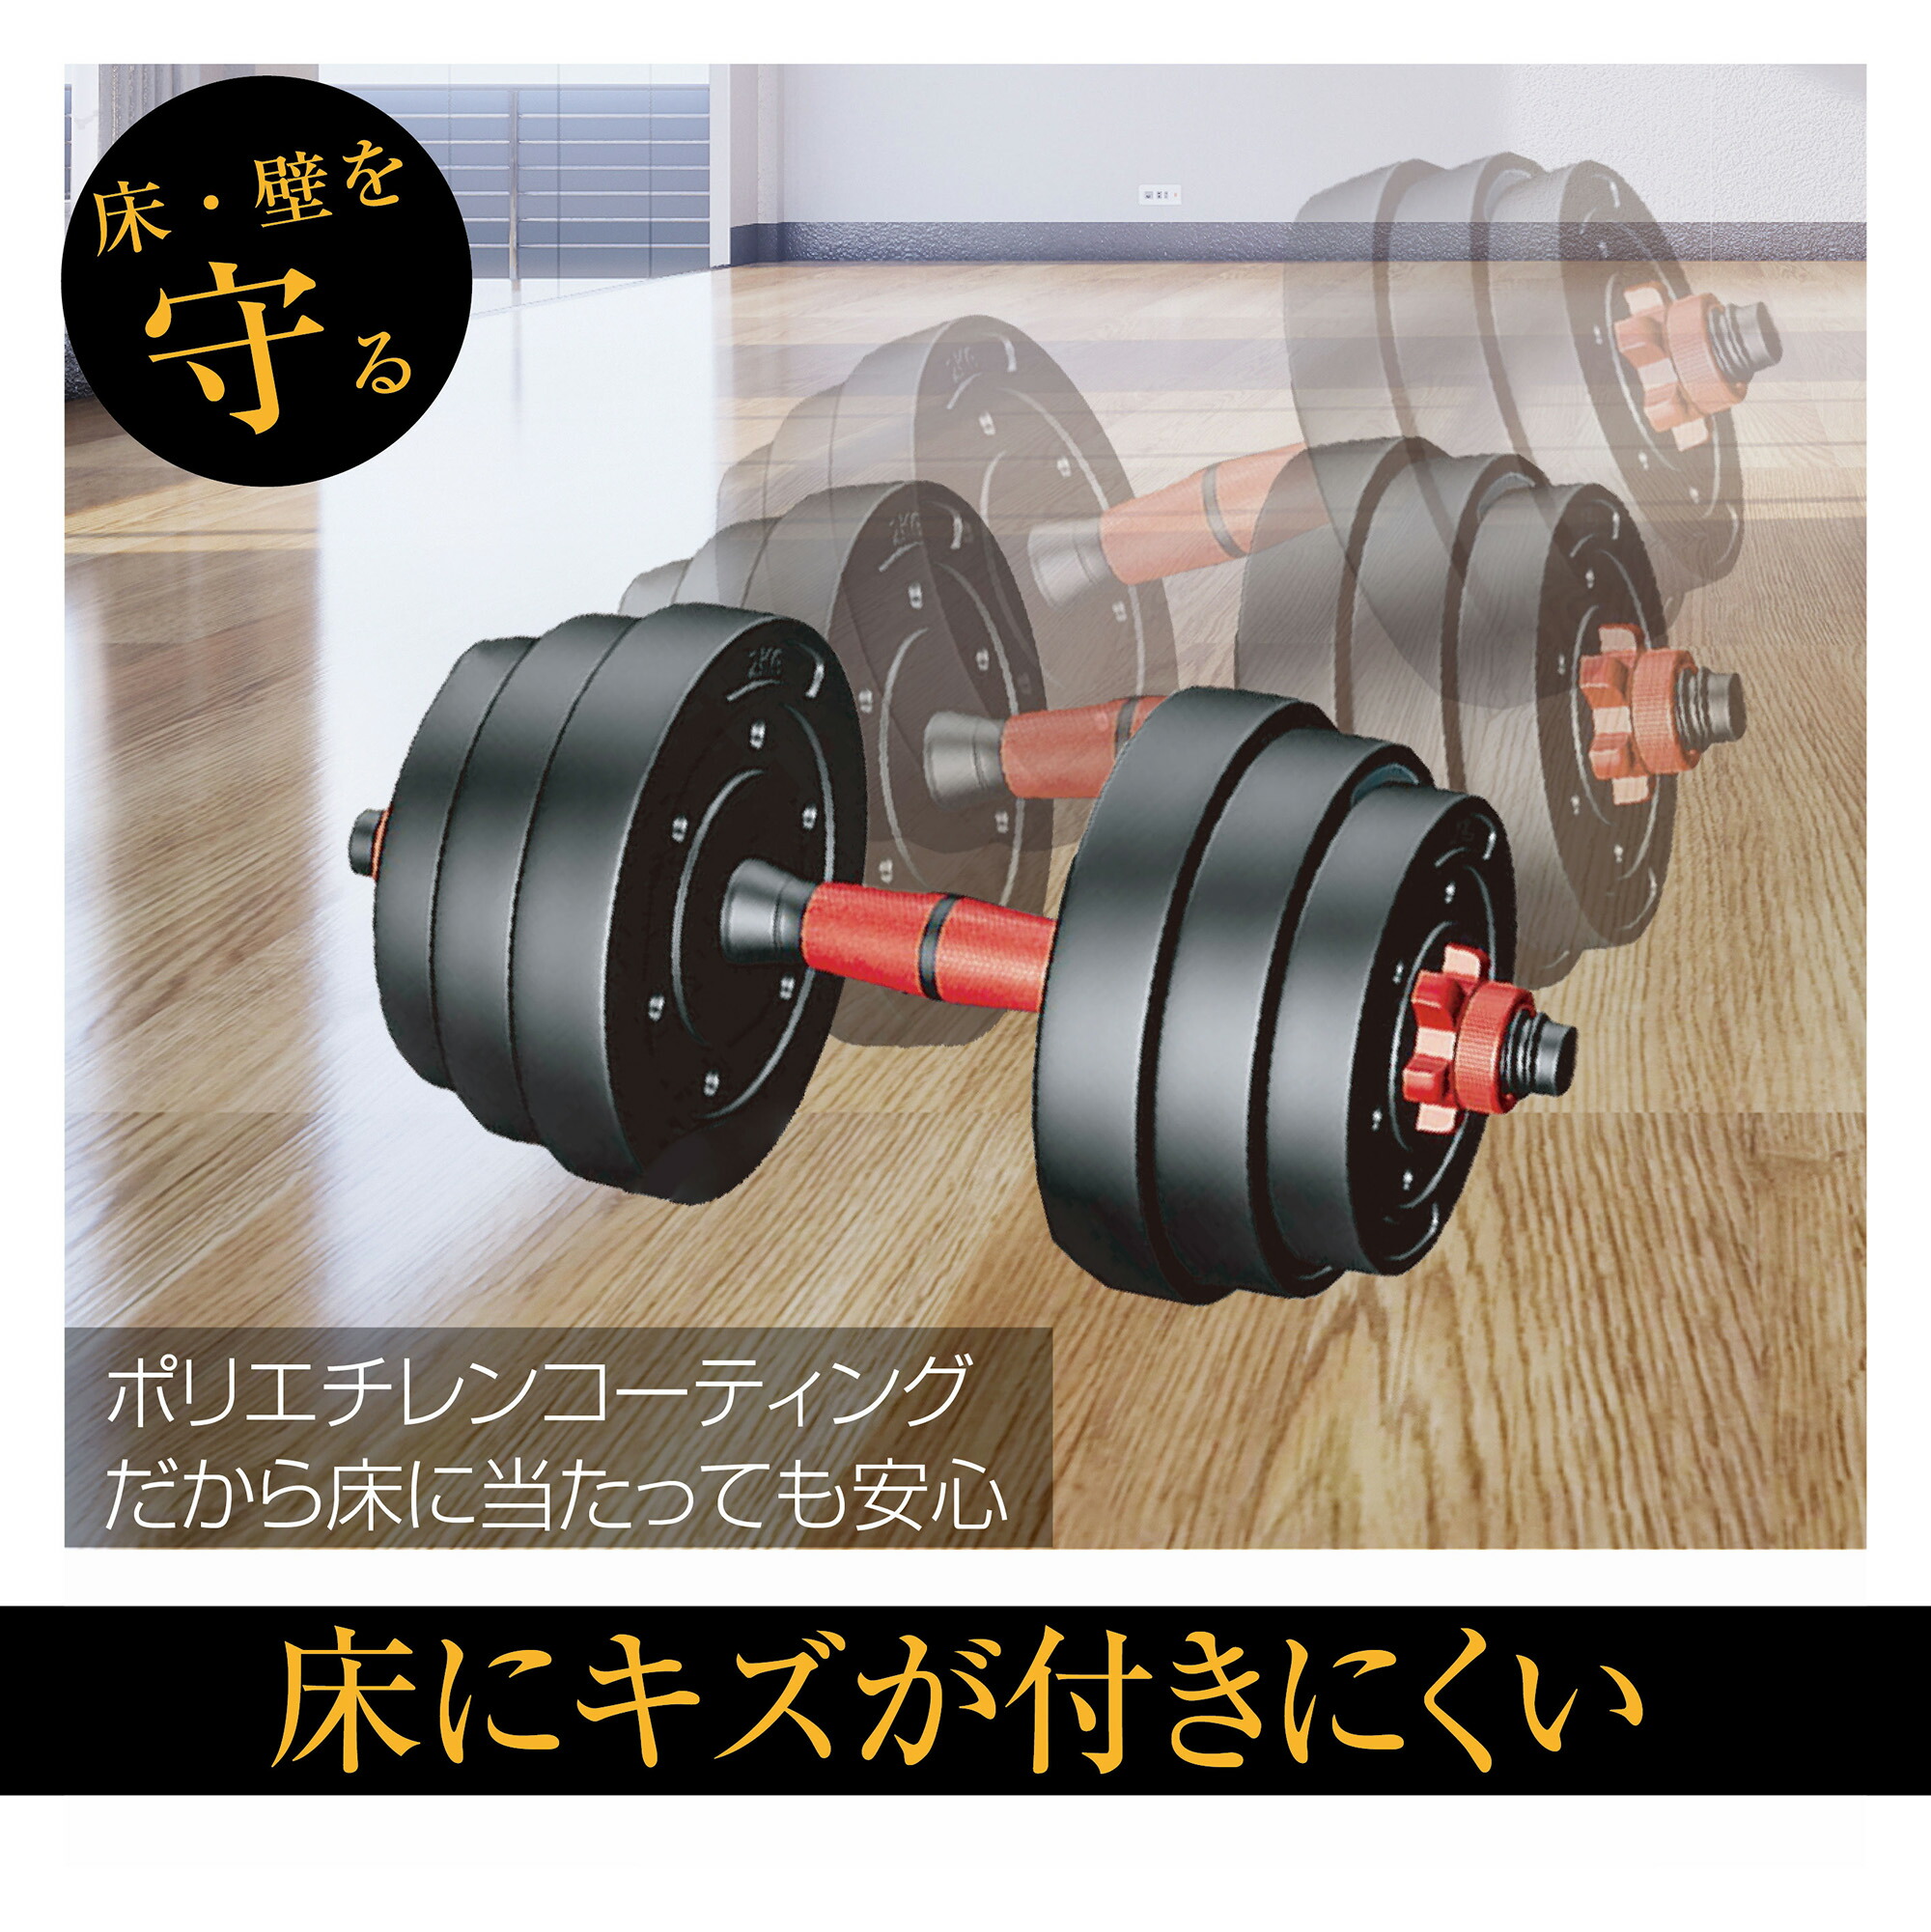 ダンベル 可変式 40kg (20kg×2個) セット 筋トレ トレーニング 